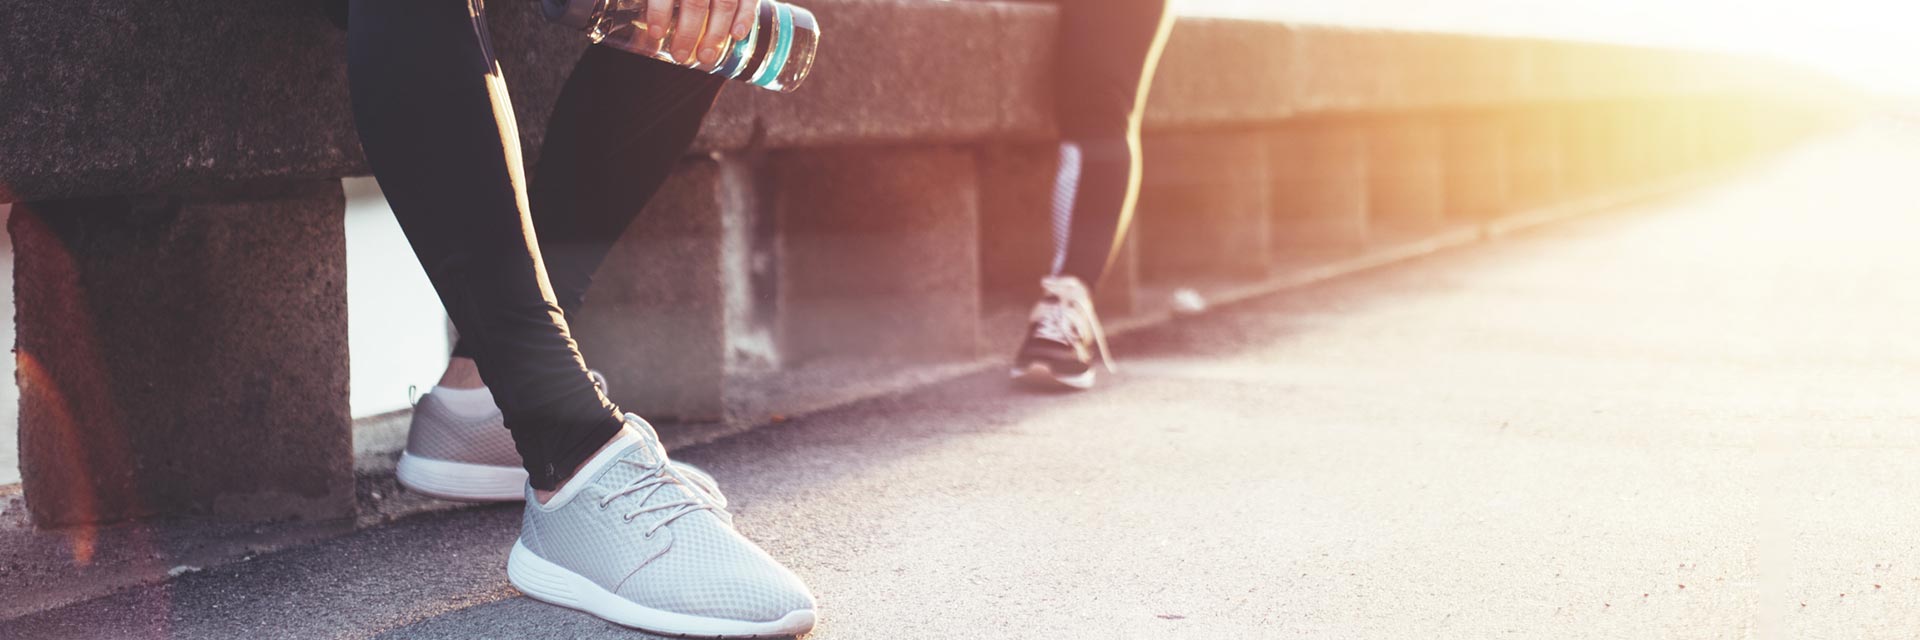 Hacer al menos 30 minutos diario de ejercicio es importante para cuidarte, te mostramos razones por las que salir a correr.